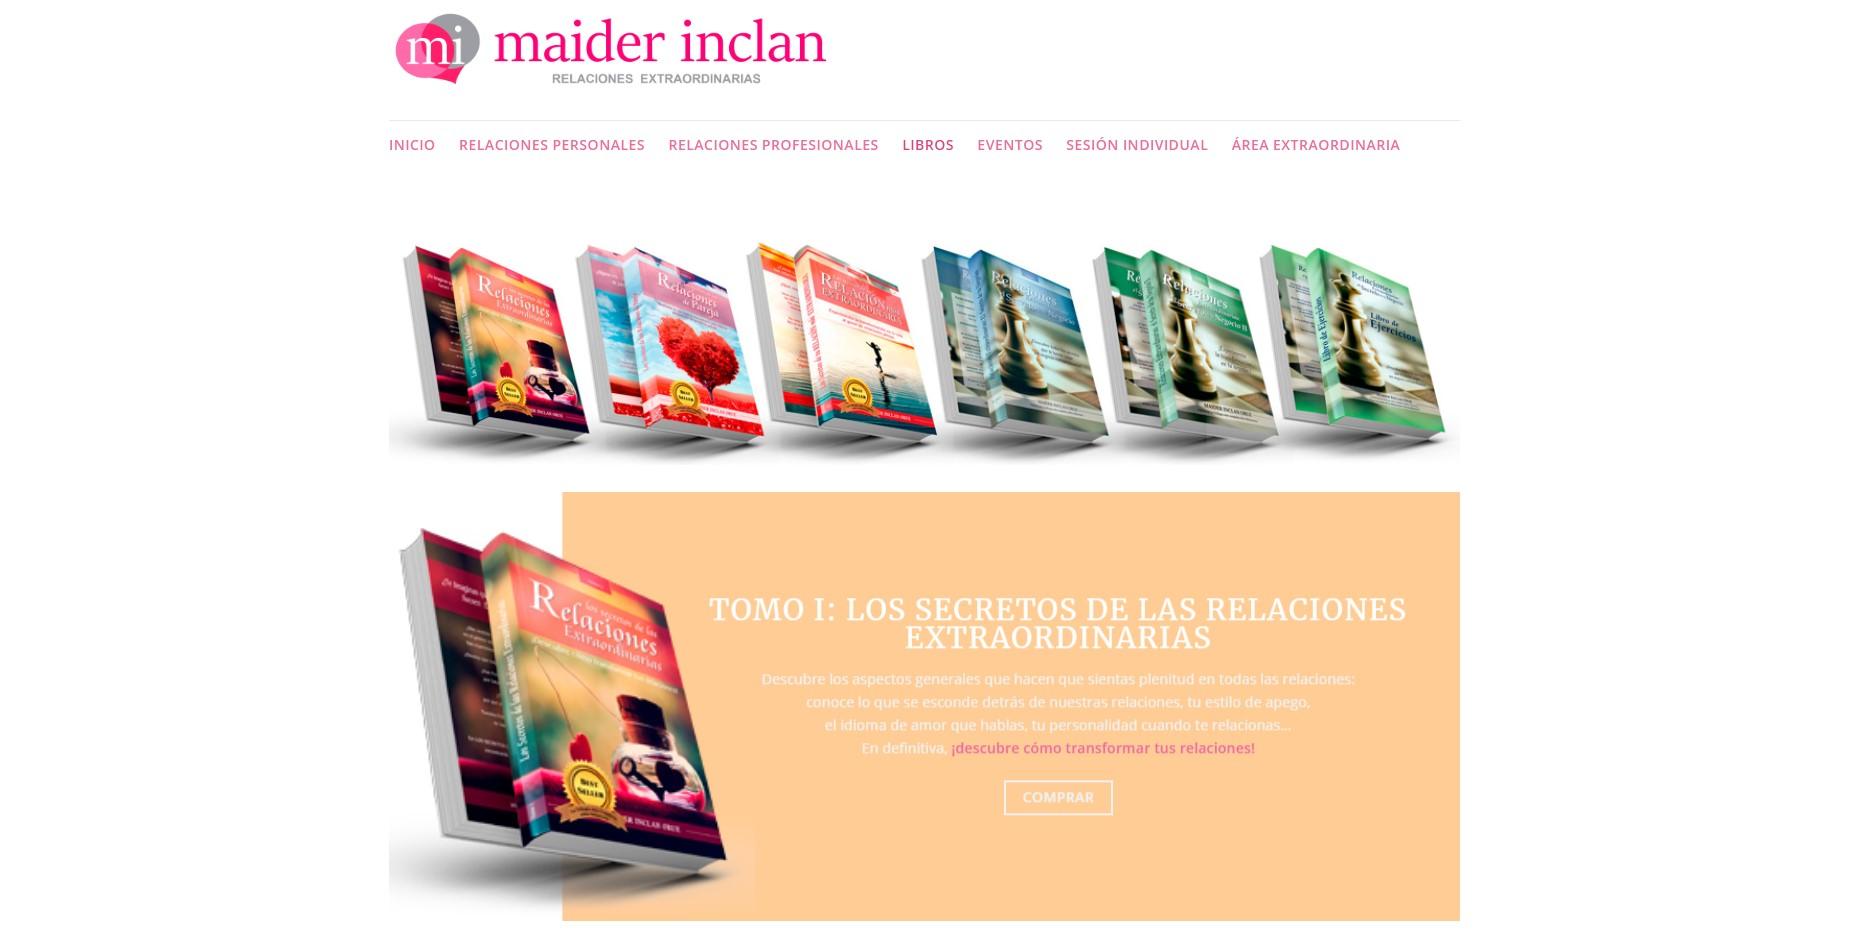 Diseño de tienda on-line en Bilbao para venta de libros, cursos y eventos